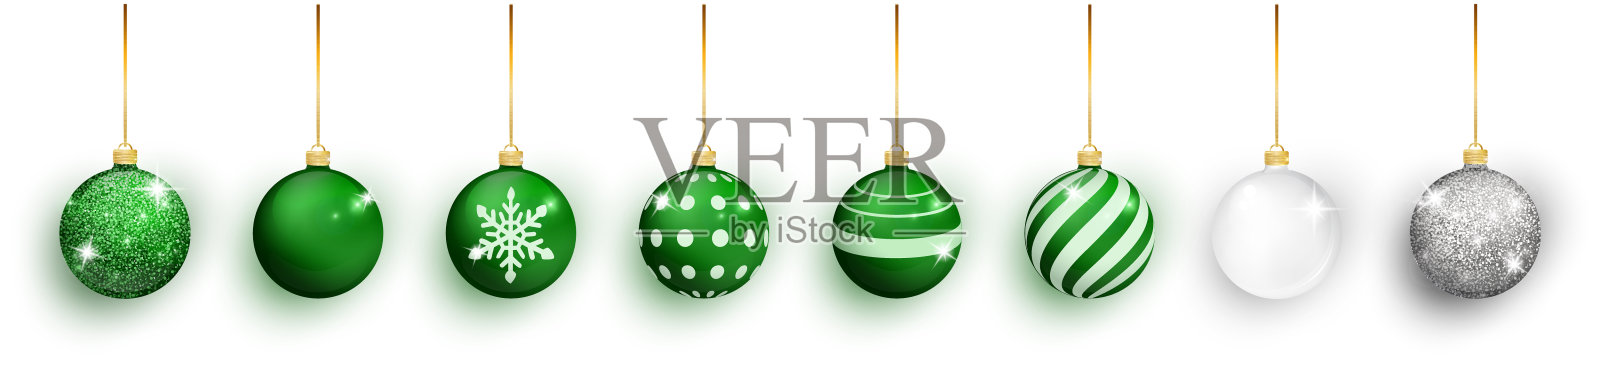 绿色圣诞球与雪的效果设置。白色背景上的圣诞玻璃球。节日装饰模板。绿色圣诞球孤立设计元素图片